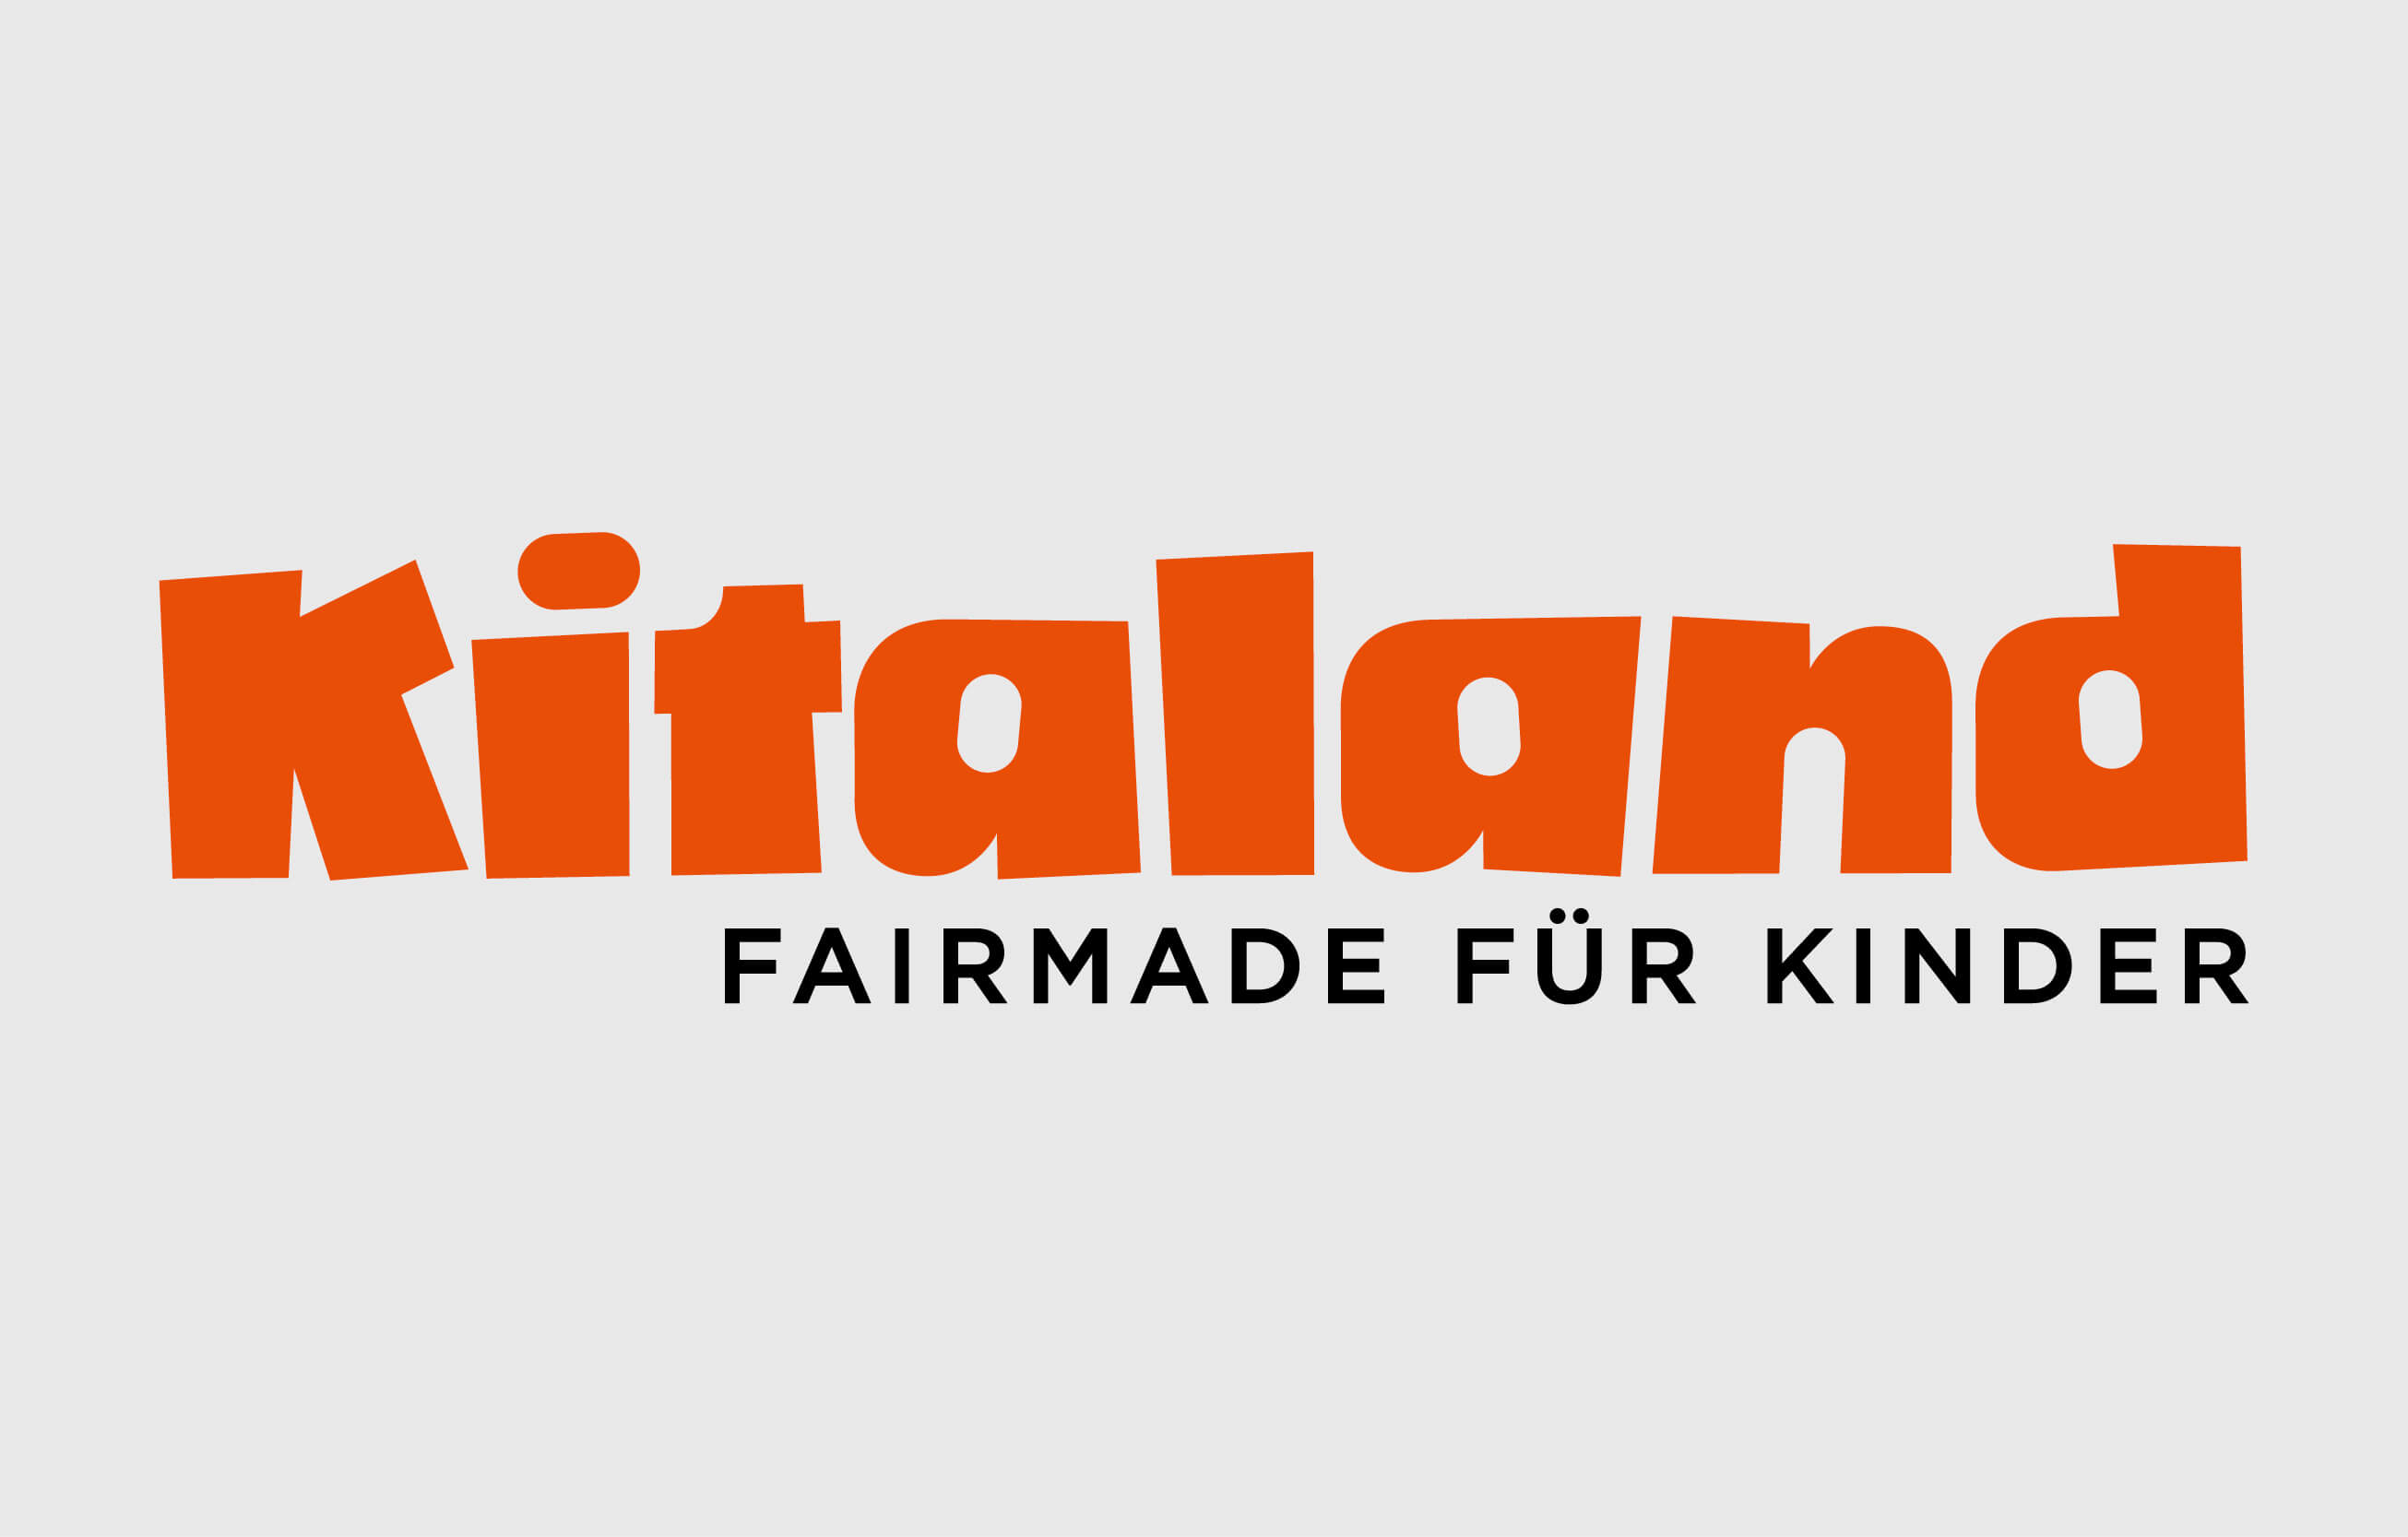 Kitaland Branding by consign | Agentur für Branding und Kommunikation